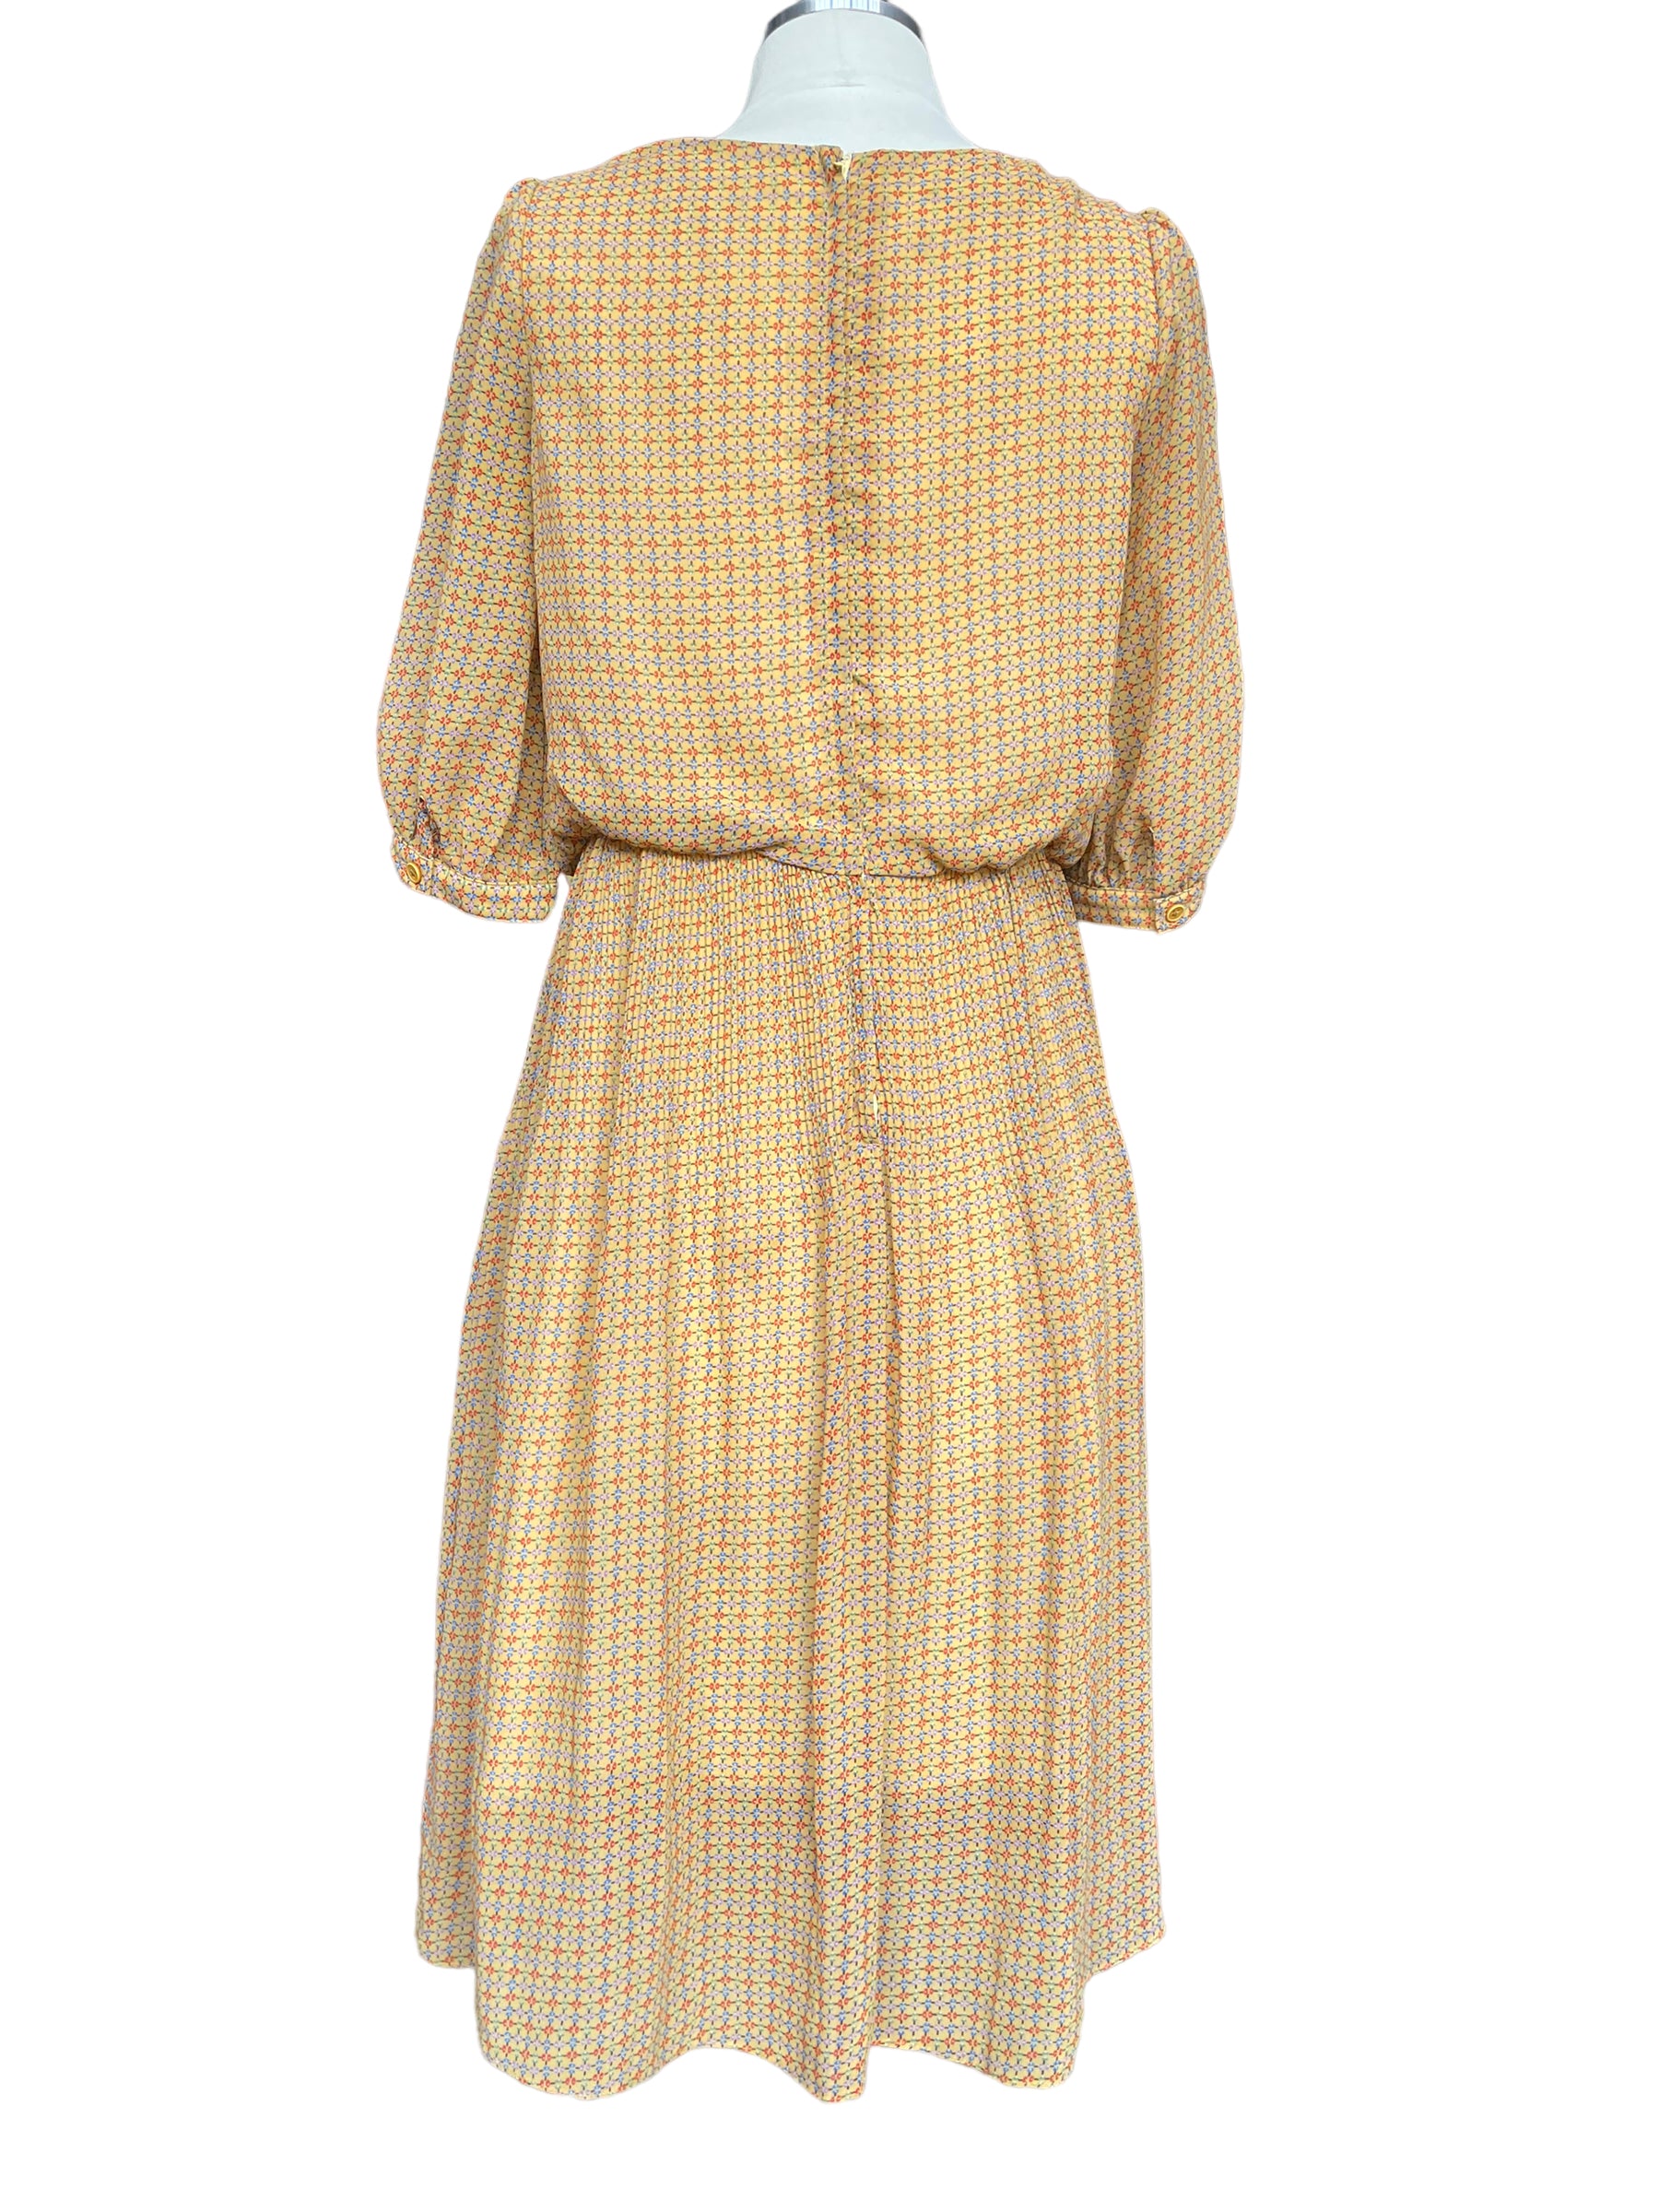 Full back view of Vintage 1950s Parisian Sheer Rayon Dress 